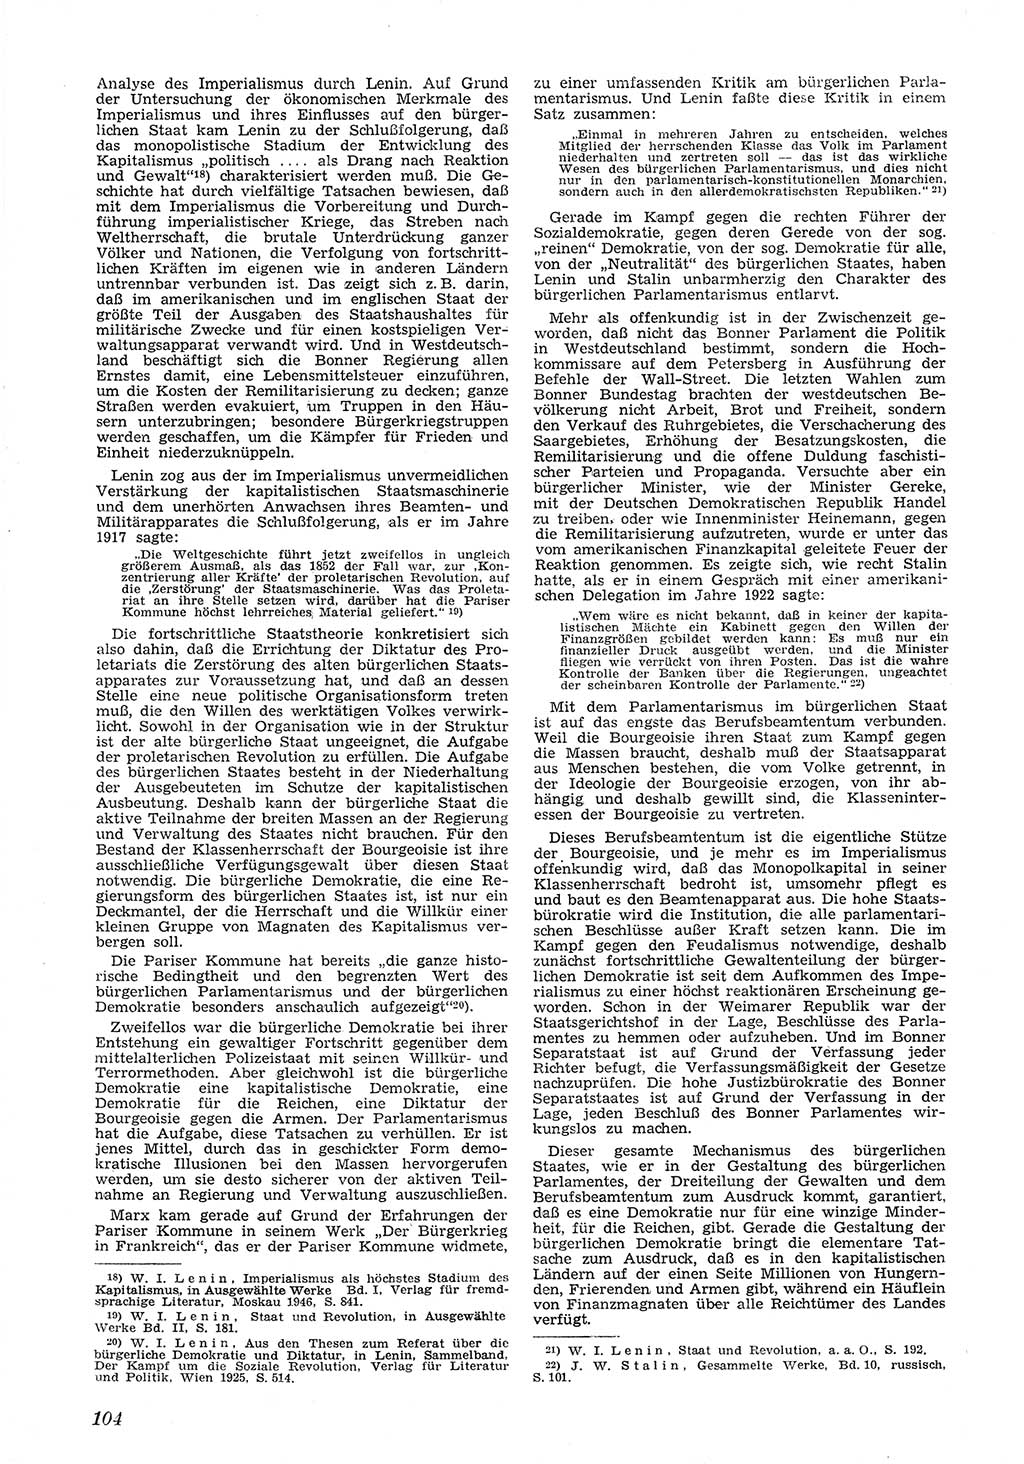 Neue Justiz (NJ), Zeitschrift für Recht und Rechtswissenschaft [Deutsche Demokratische Republik (DDR)], 5. Jahrgang 1951, Seite 104 (NJ DDR 1951, S. 104)